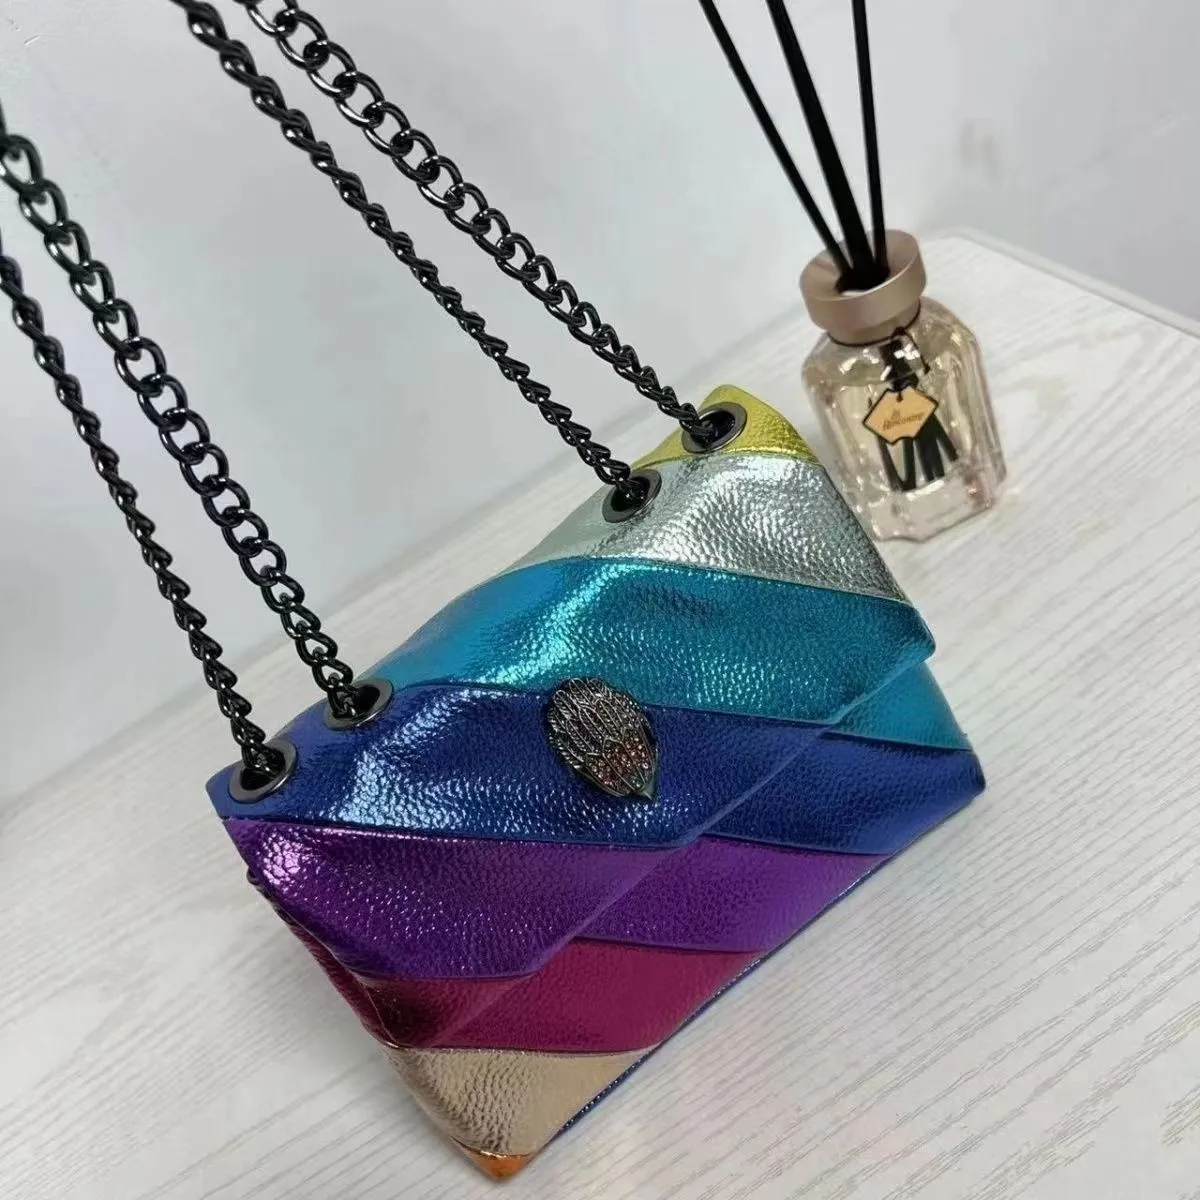 Kurt Geiger Heart-shaped handbag Luxury Designer Bag Leather London Designer Women Men Mini Shoulder Bag Tote bag Metal logo